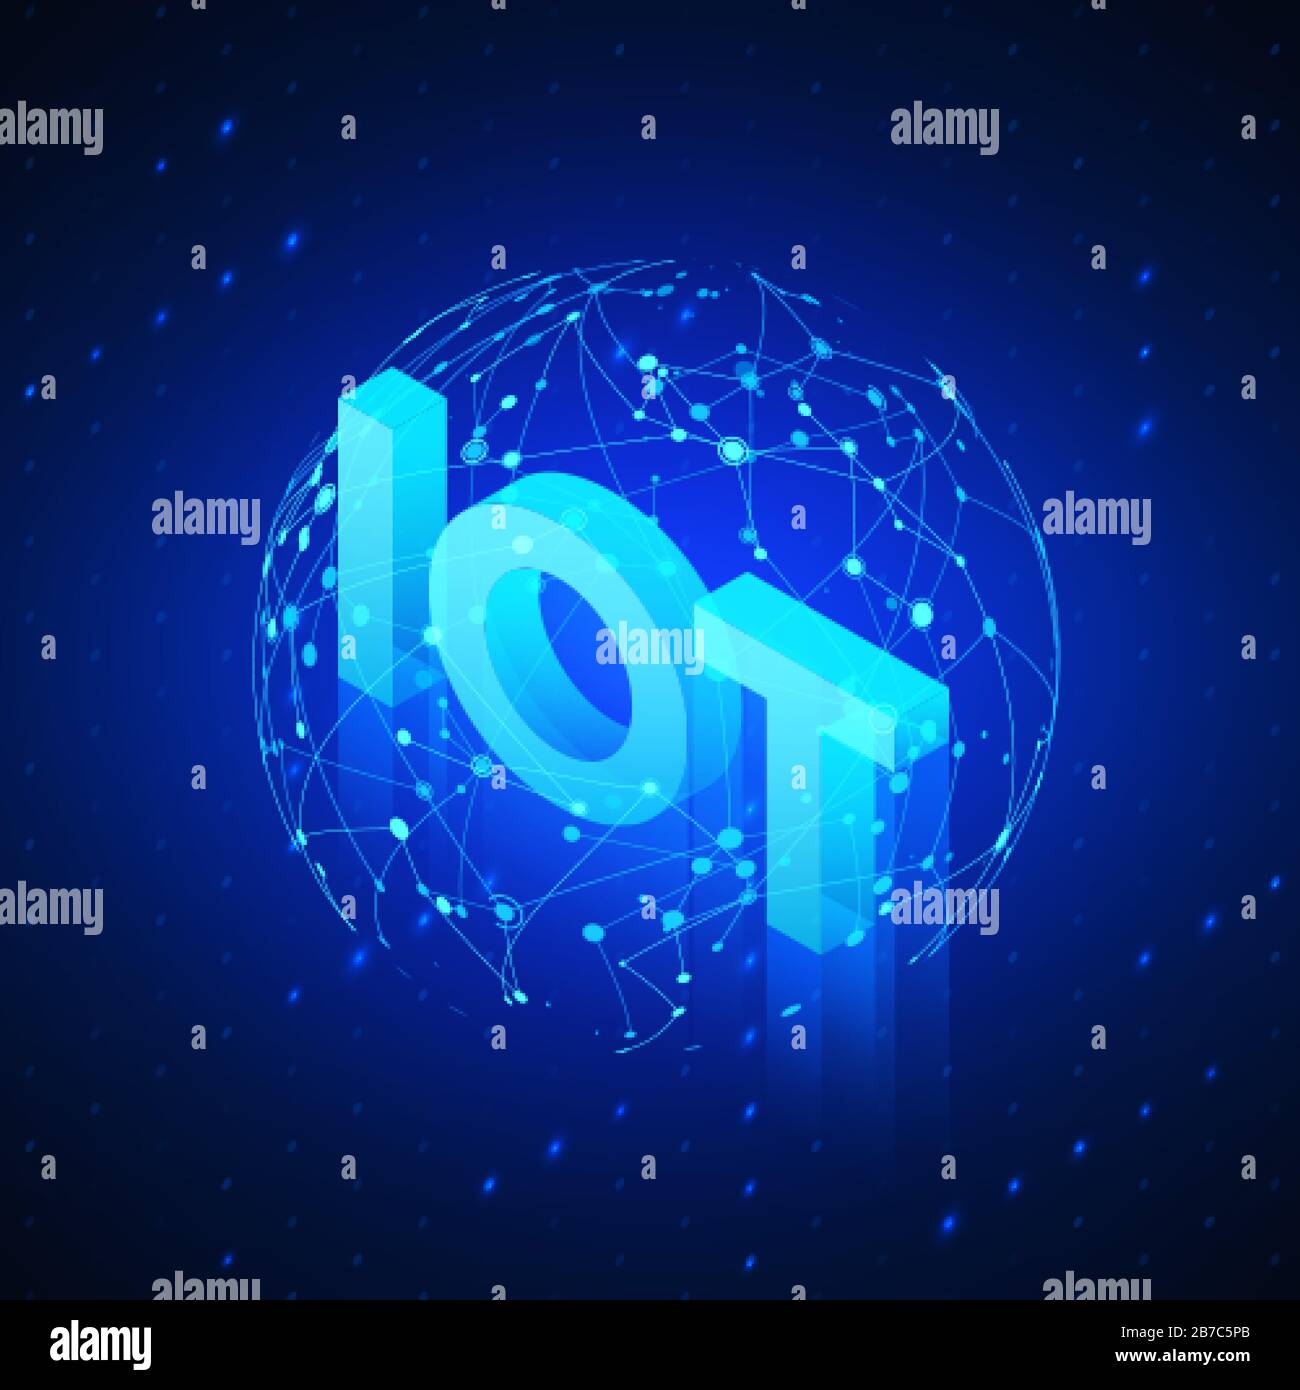 Globales Netzwerkhologramm mit Text-IOT-Incide. Technologieblauer isometrischer Hintergrund. Vektorgrafiken Stock Vektor